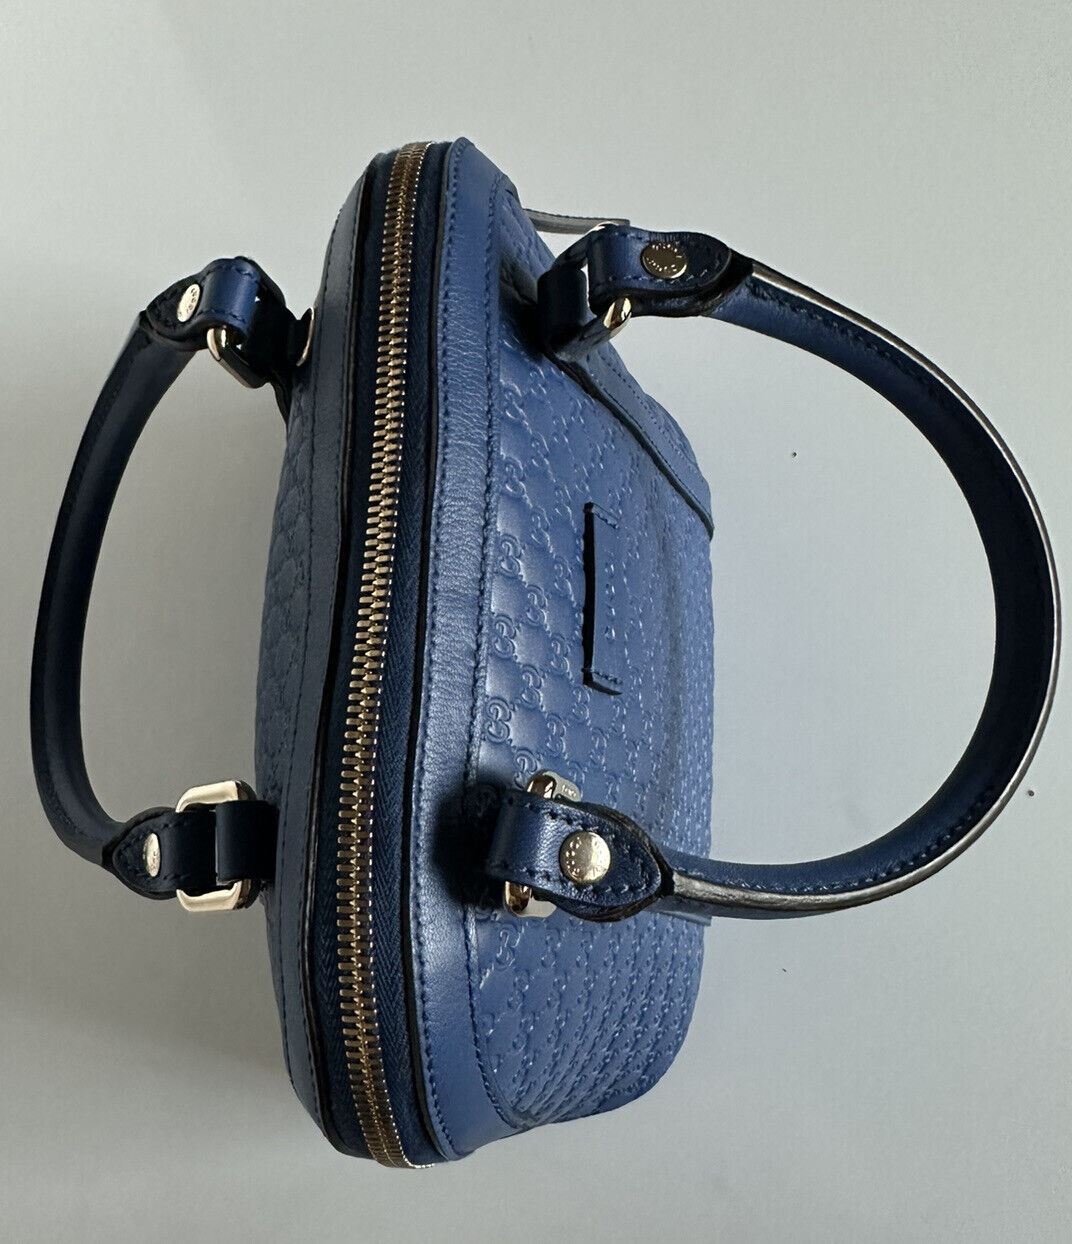 Neue Gucci GG Leder GG Microguccissima Monogramm Kuppeltasche Blau Hergestellt in Italien 